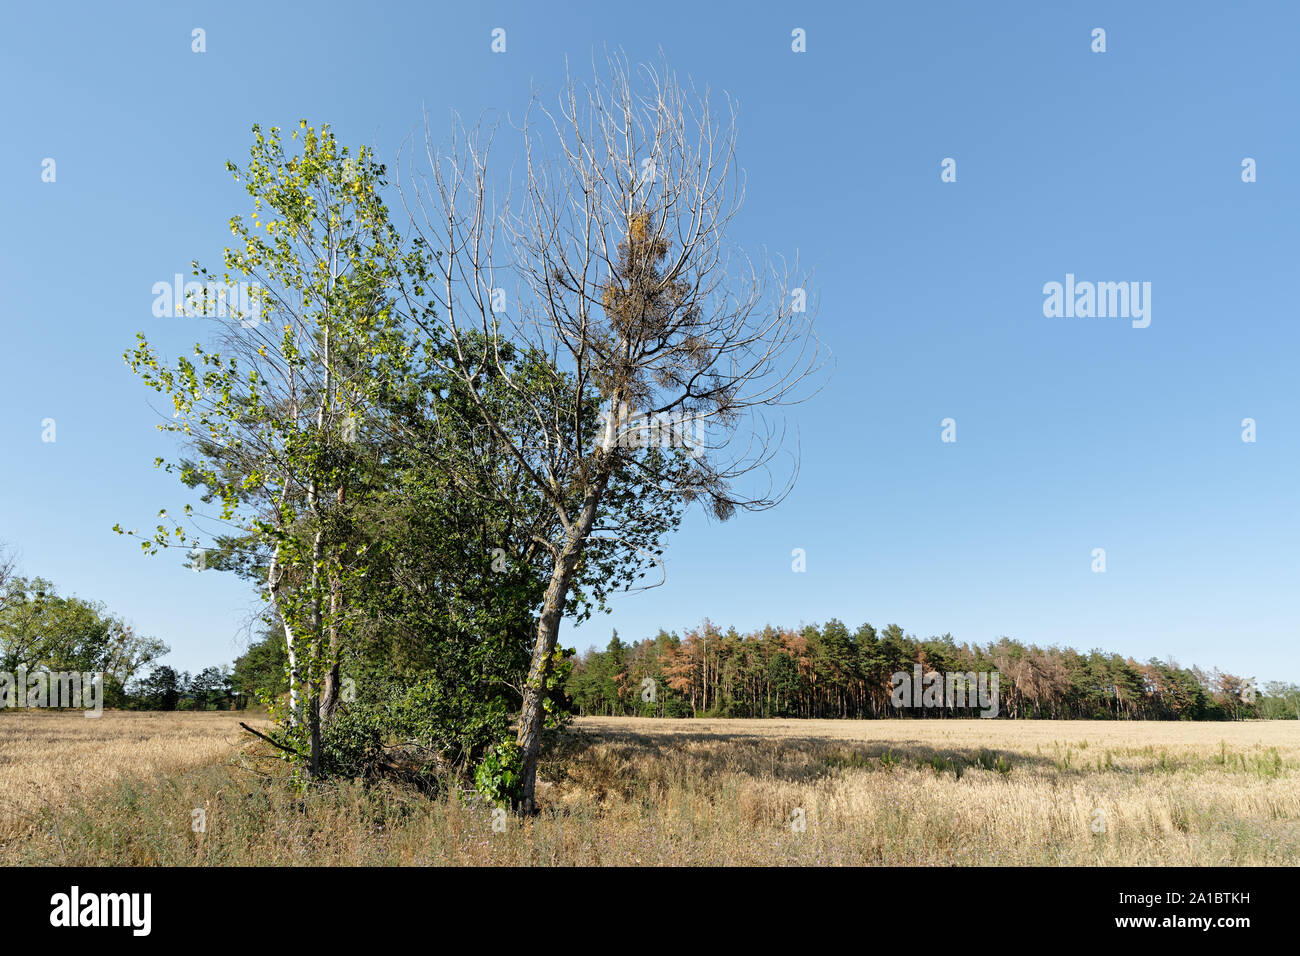 Besondere Gruppe der Bäume mit deutlichen Spuren der Dürre, im Hintergrund hinter einem Feld Struktur ein zusätzliches Stück Wald mit teils Sterbende Bäume Stockfoto